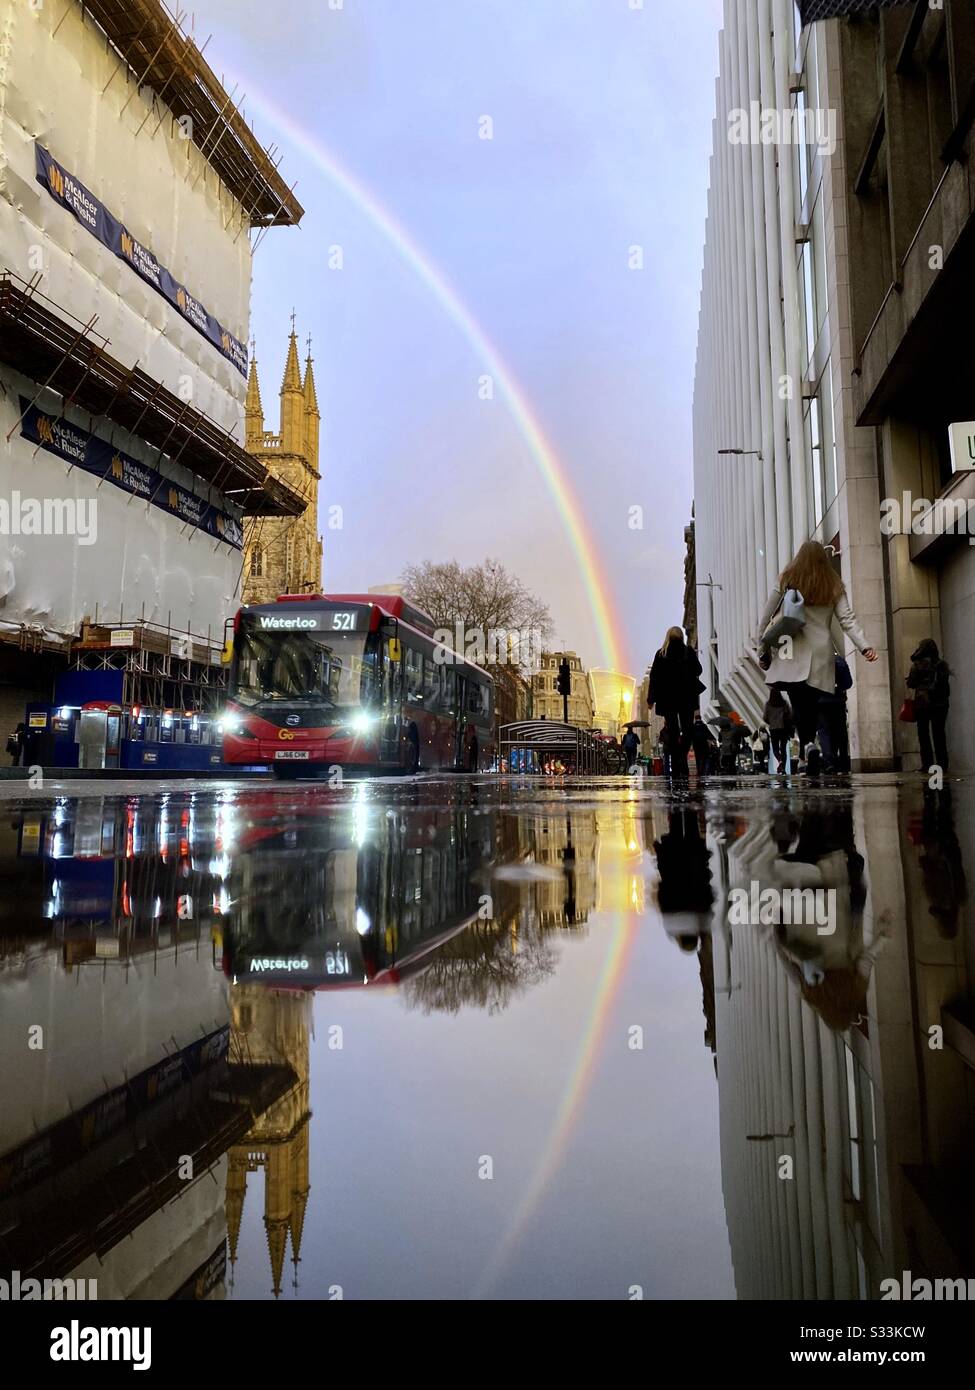 Météo au Royaume-Uni : un arc-en-ciel brille au-dessus du bâtiment Walkie Talkie, tel qu'il se reflète dans une rue pluvieuse à Holborn Viaduc, Londres, Angleterre. Banque D'Images